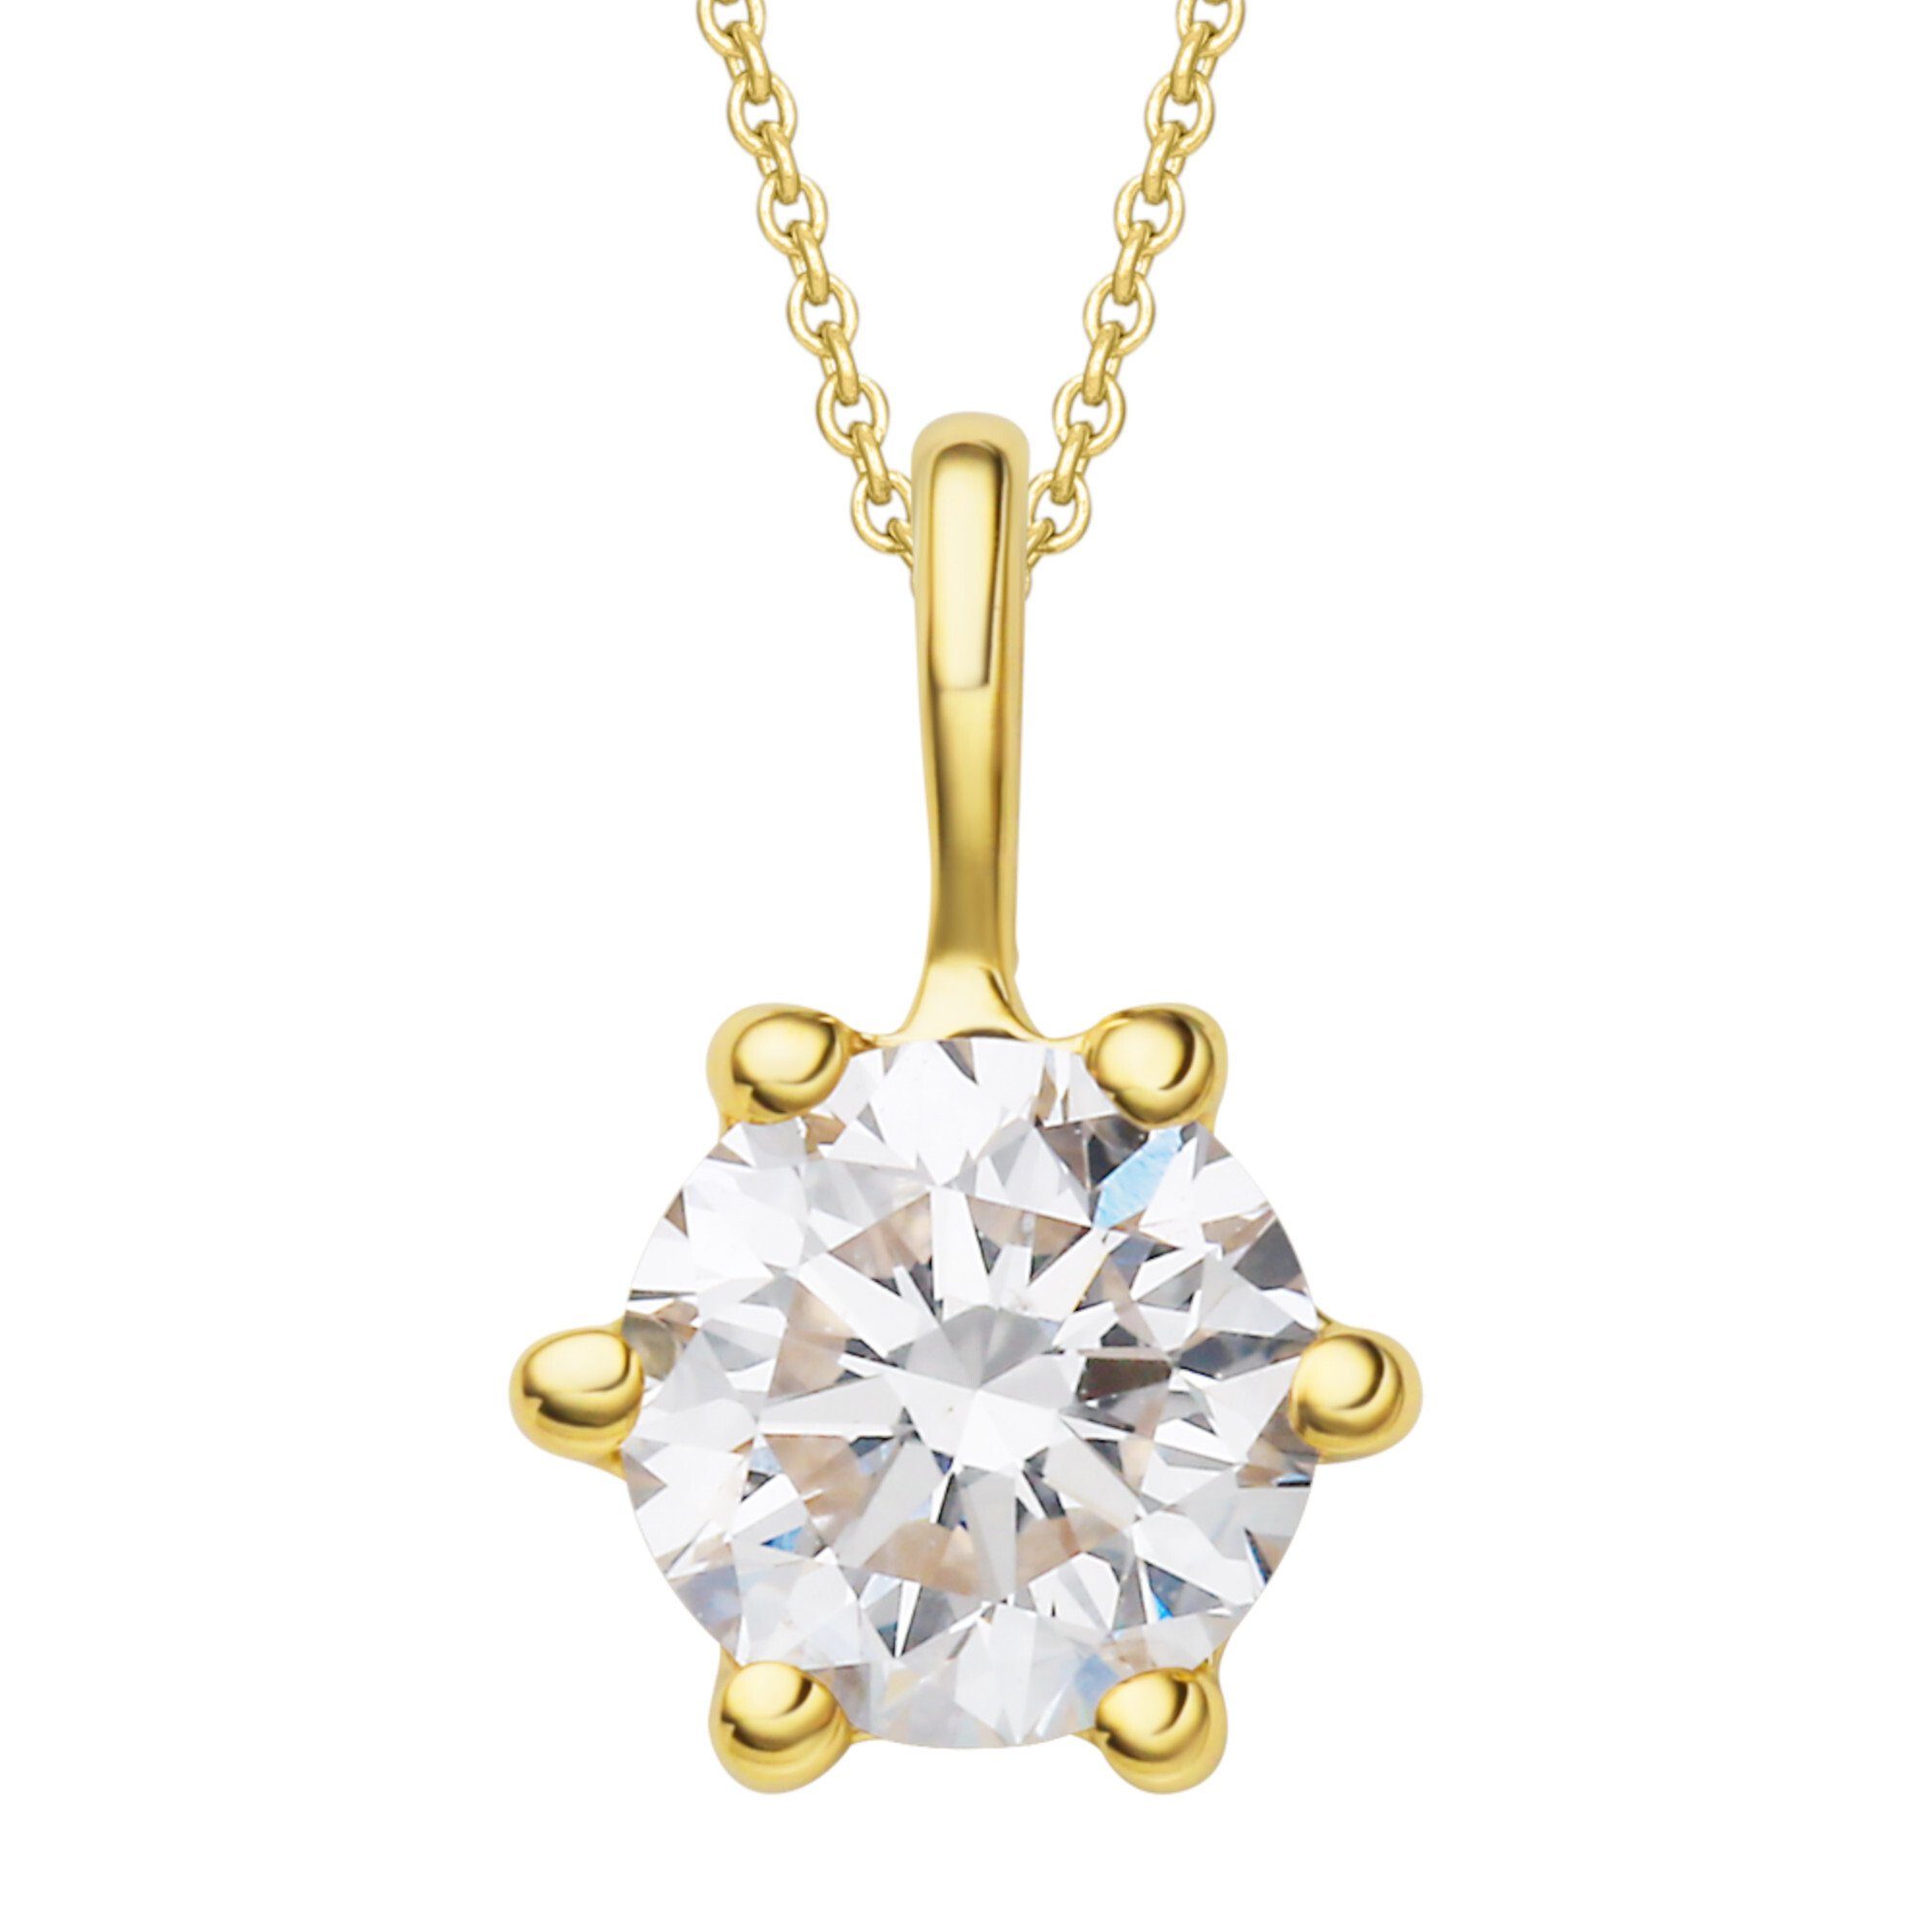 ONE ELEMENT Kettenanhänger 0.25 ct Diamant Brillant Anhänger aus 750 Gelbgold, Damen Gold Schmuck | Kettenanhänger